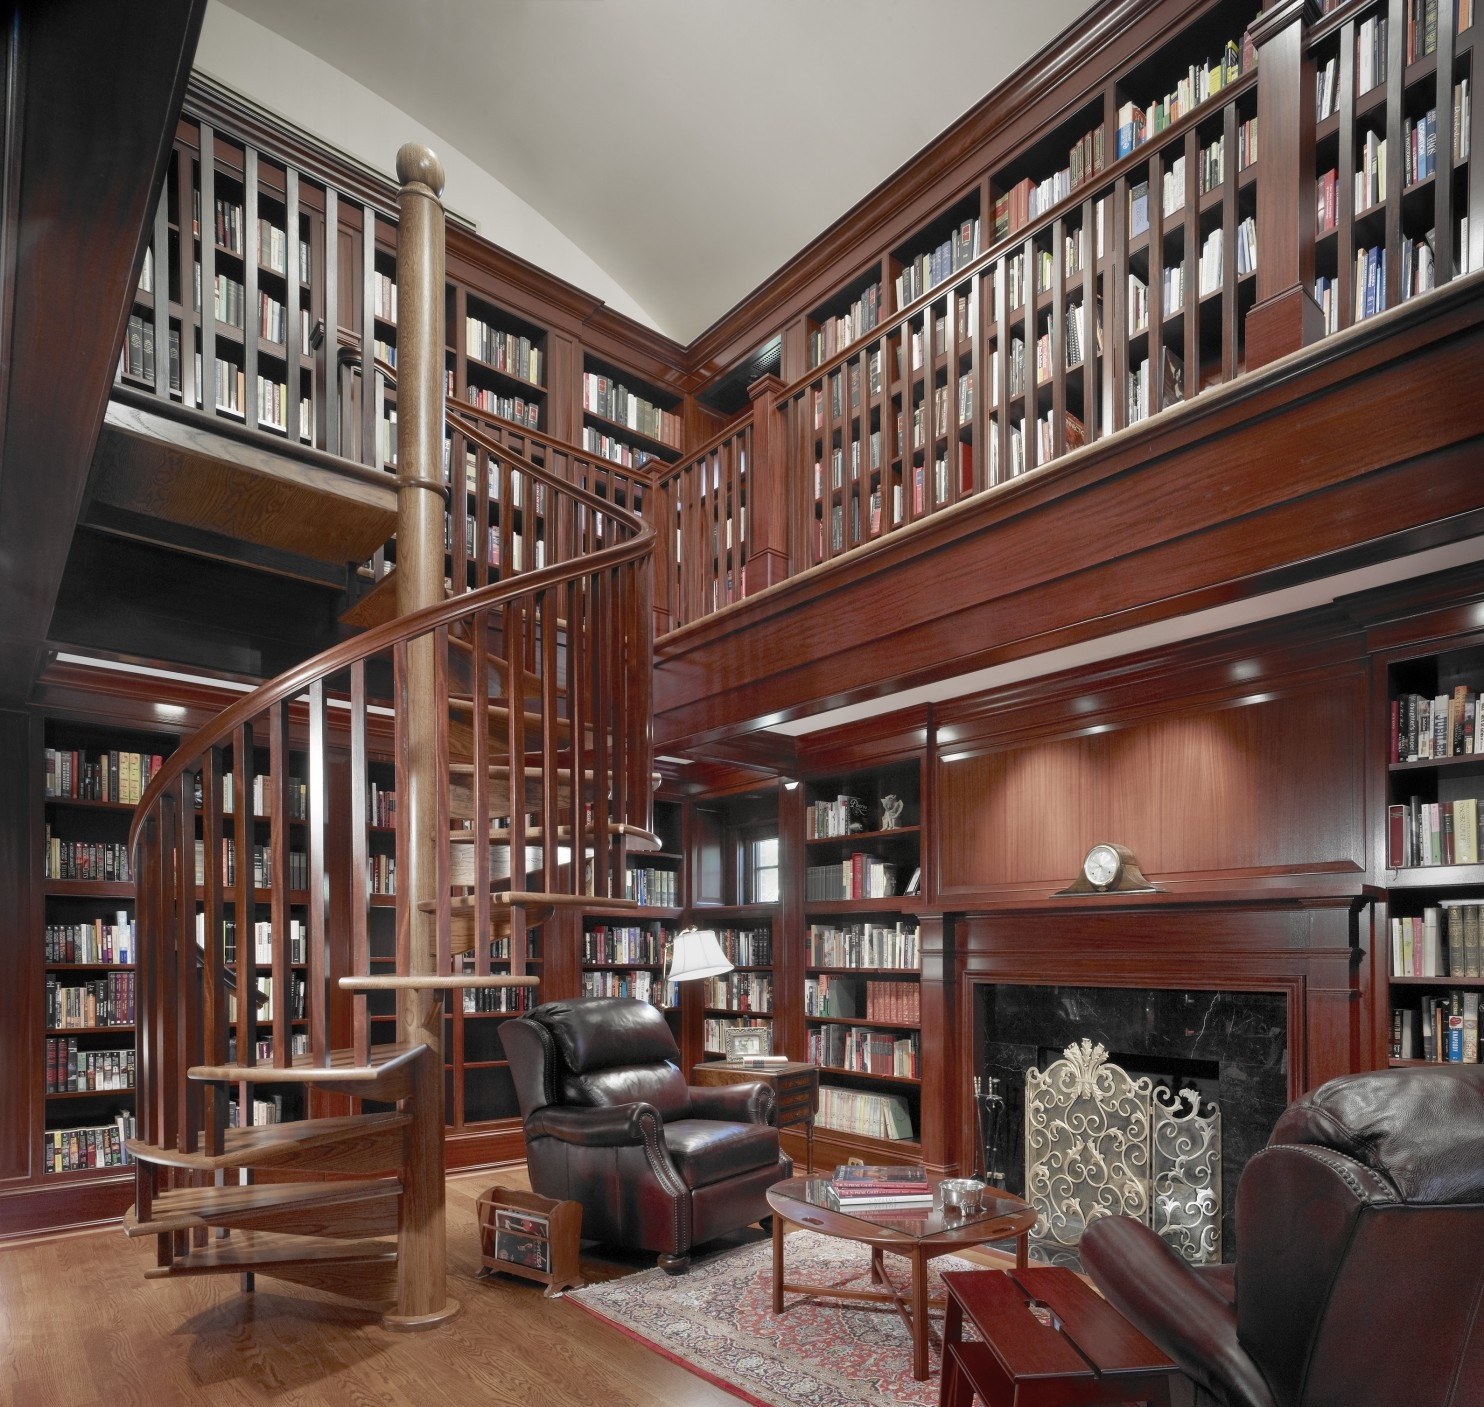 Современный стиль библиотеки. Библиотека в доме. Интерьер библиотеки. Библиотека с высокими потолками. Домашняя библиотека интерьер.